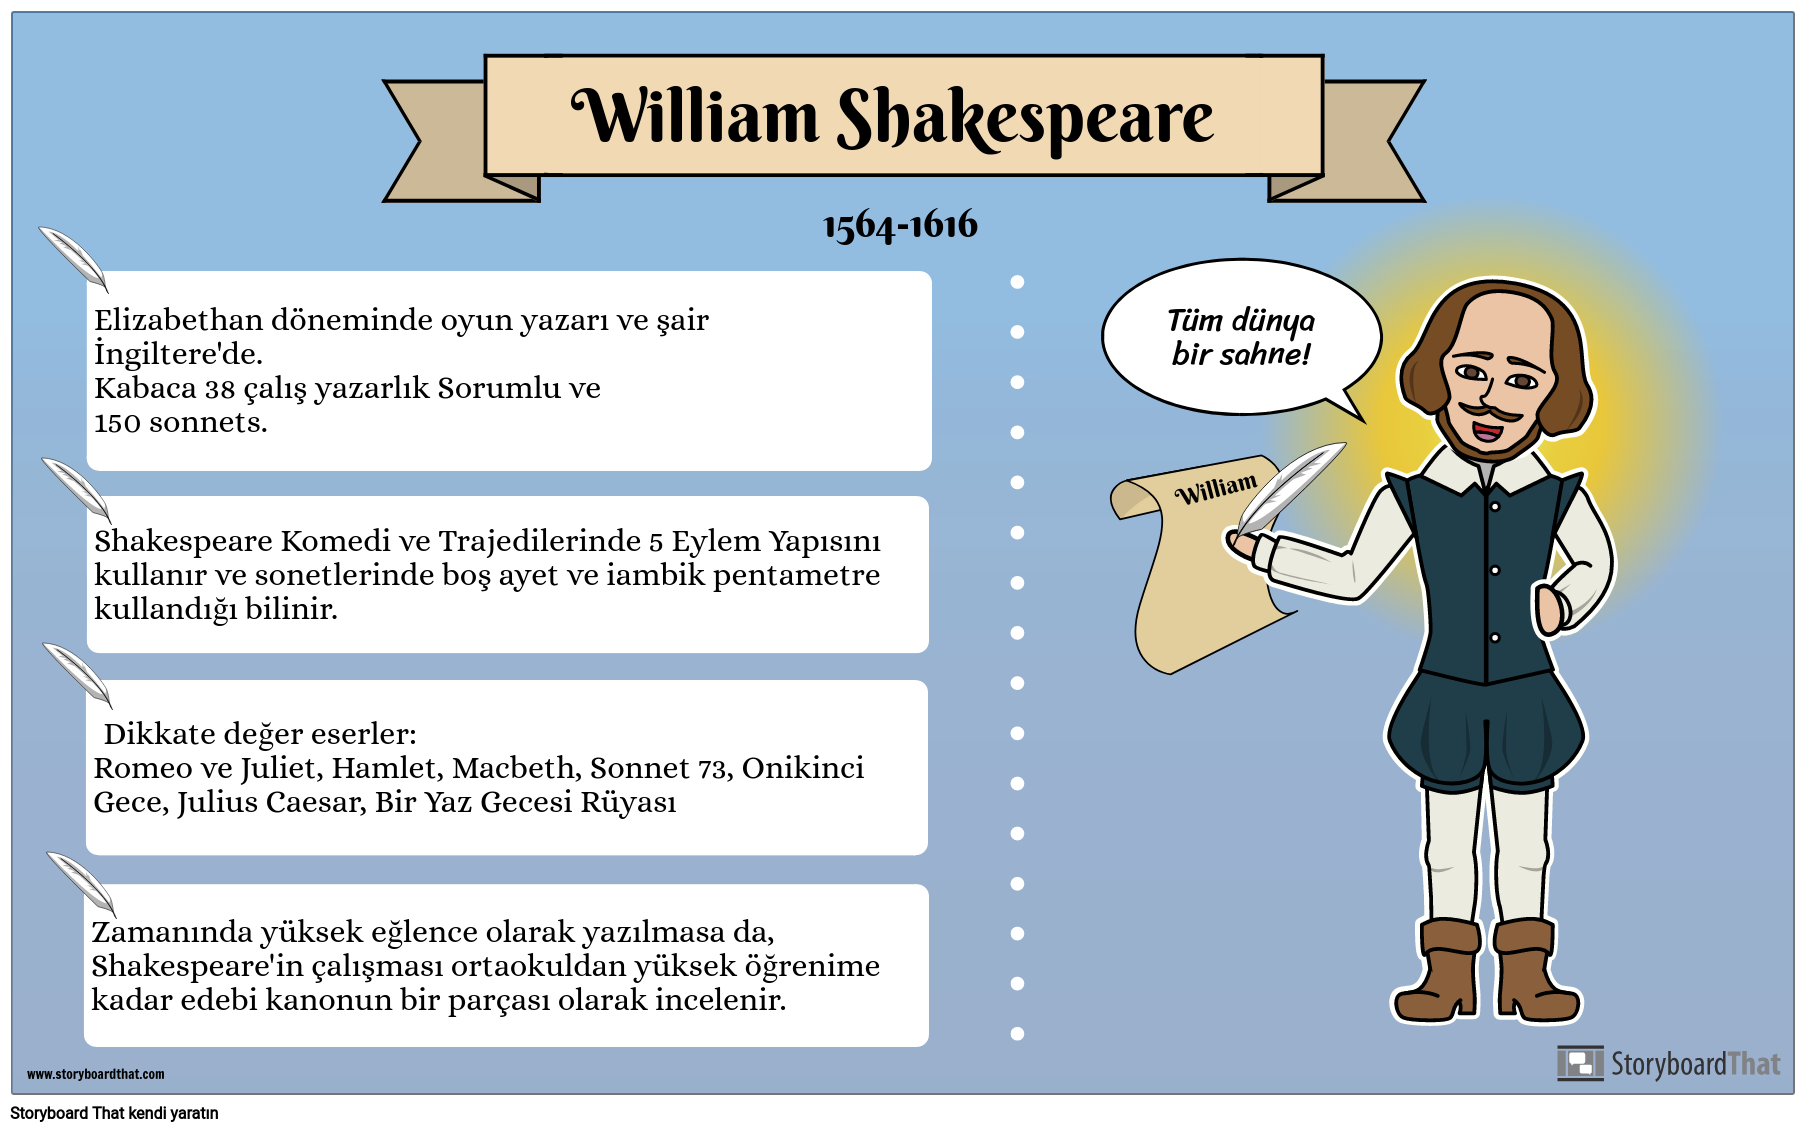 Biyografi Poster Örneği - William Shakespeare 